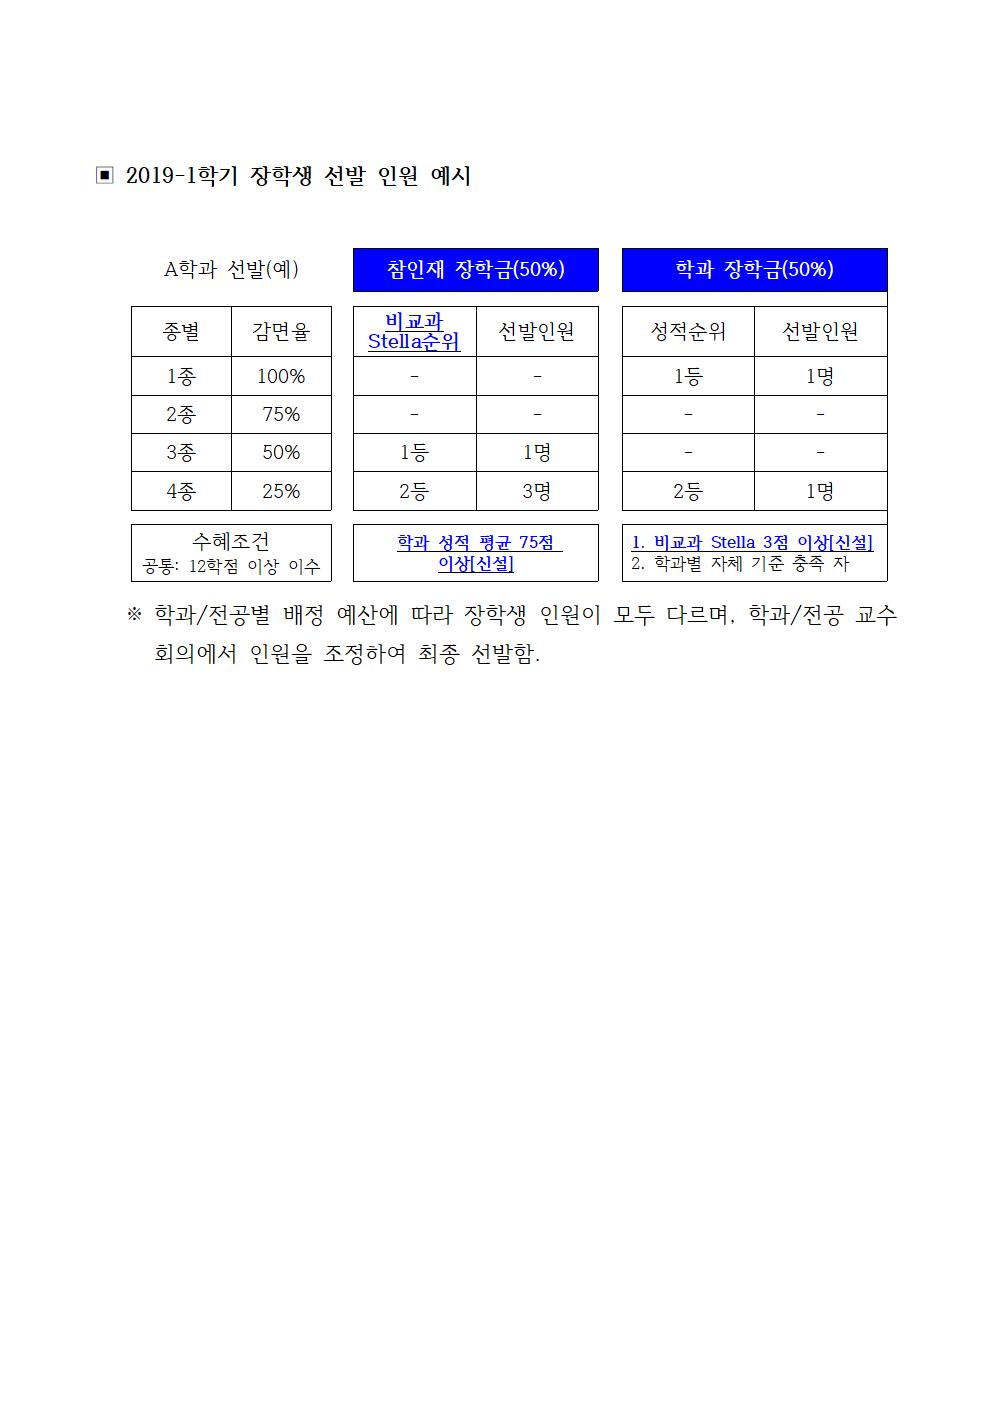 [중요] 2019학년도 장학금 지급 규정 개정 안내(재공지)